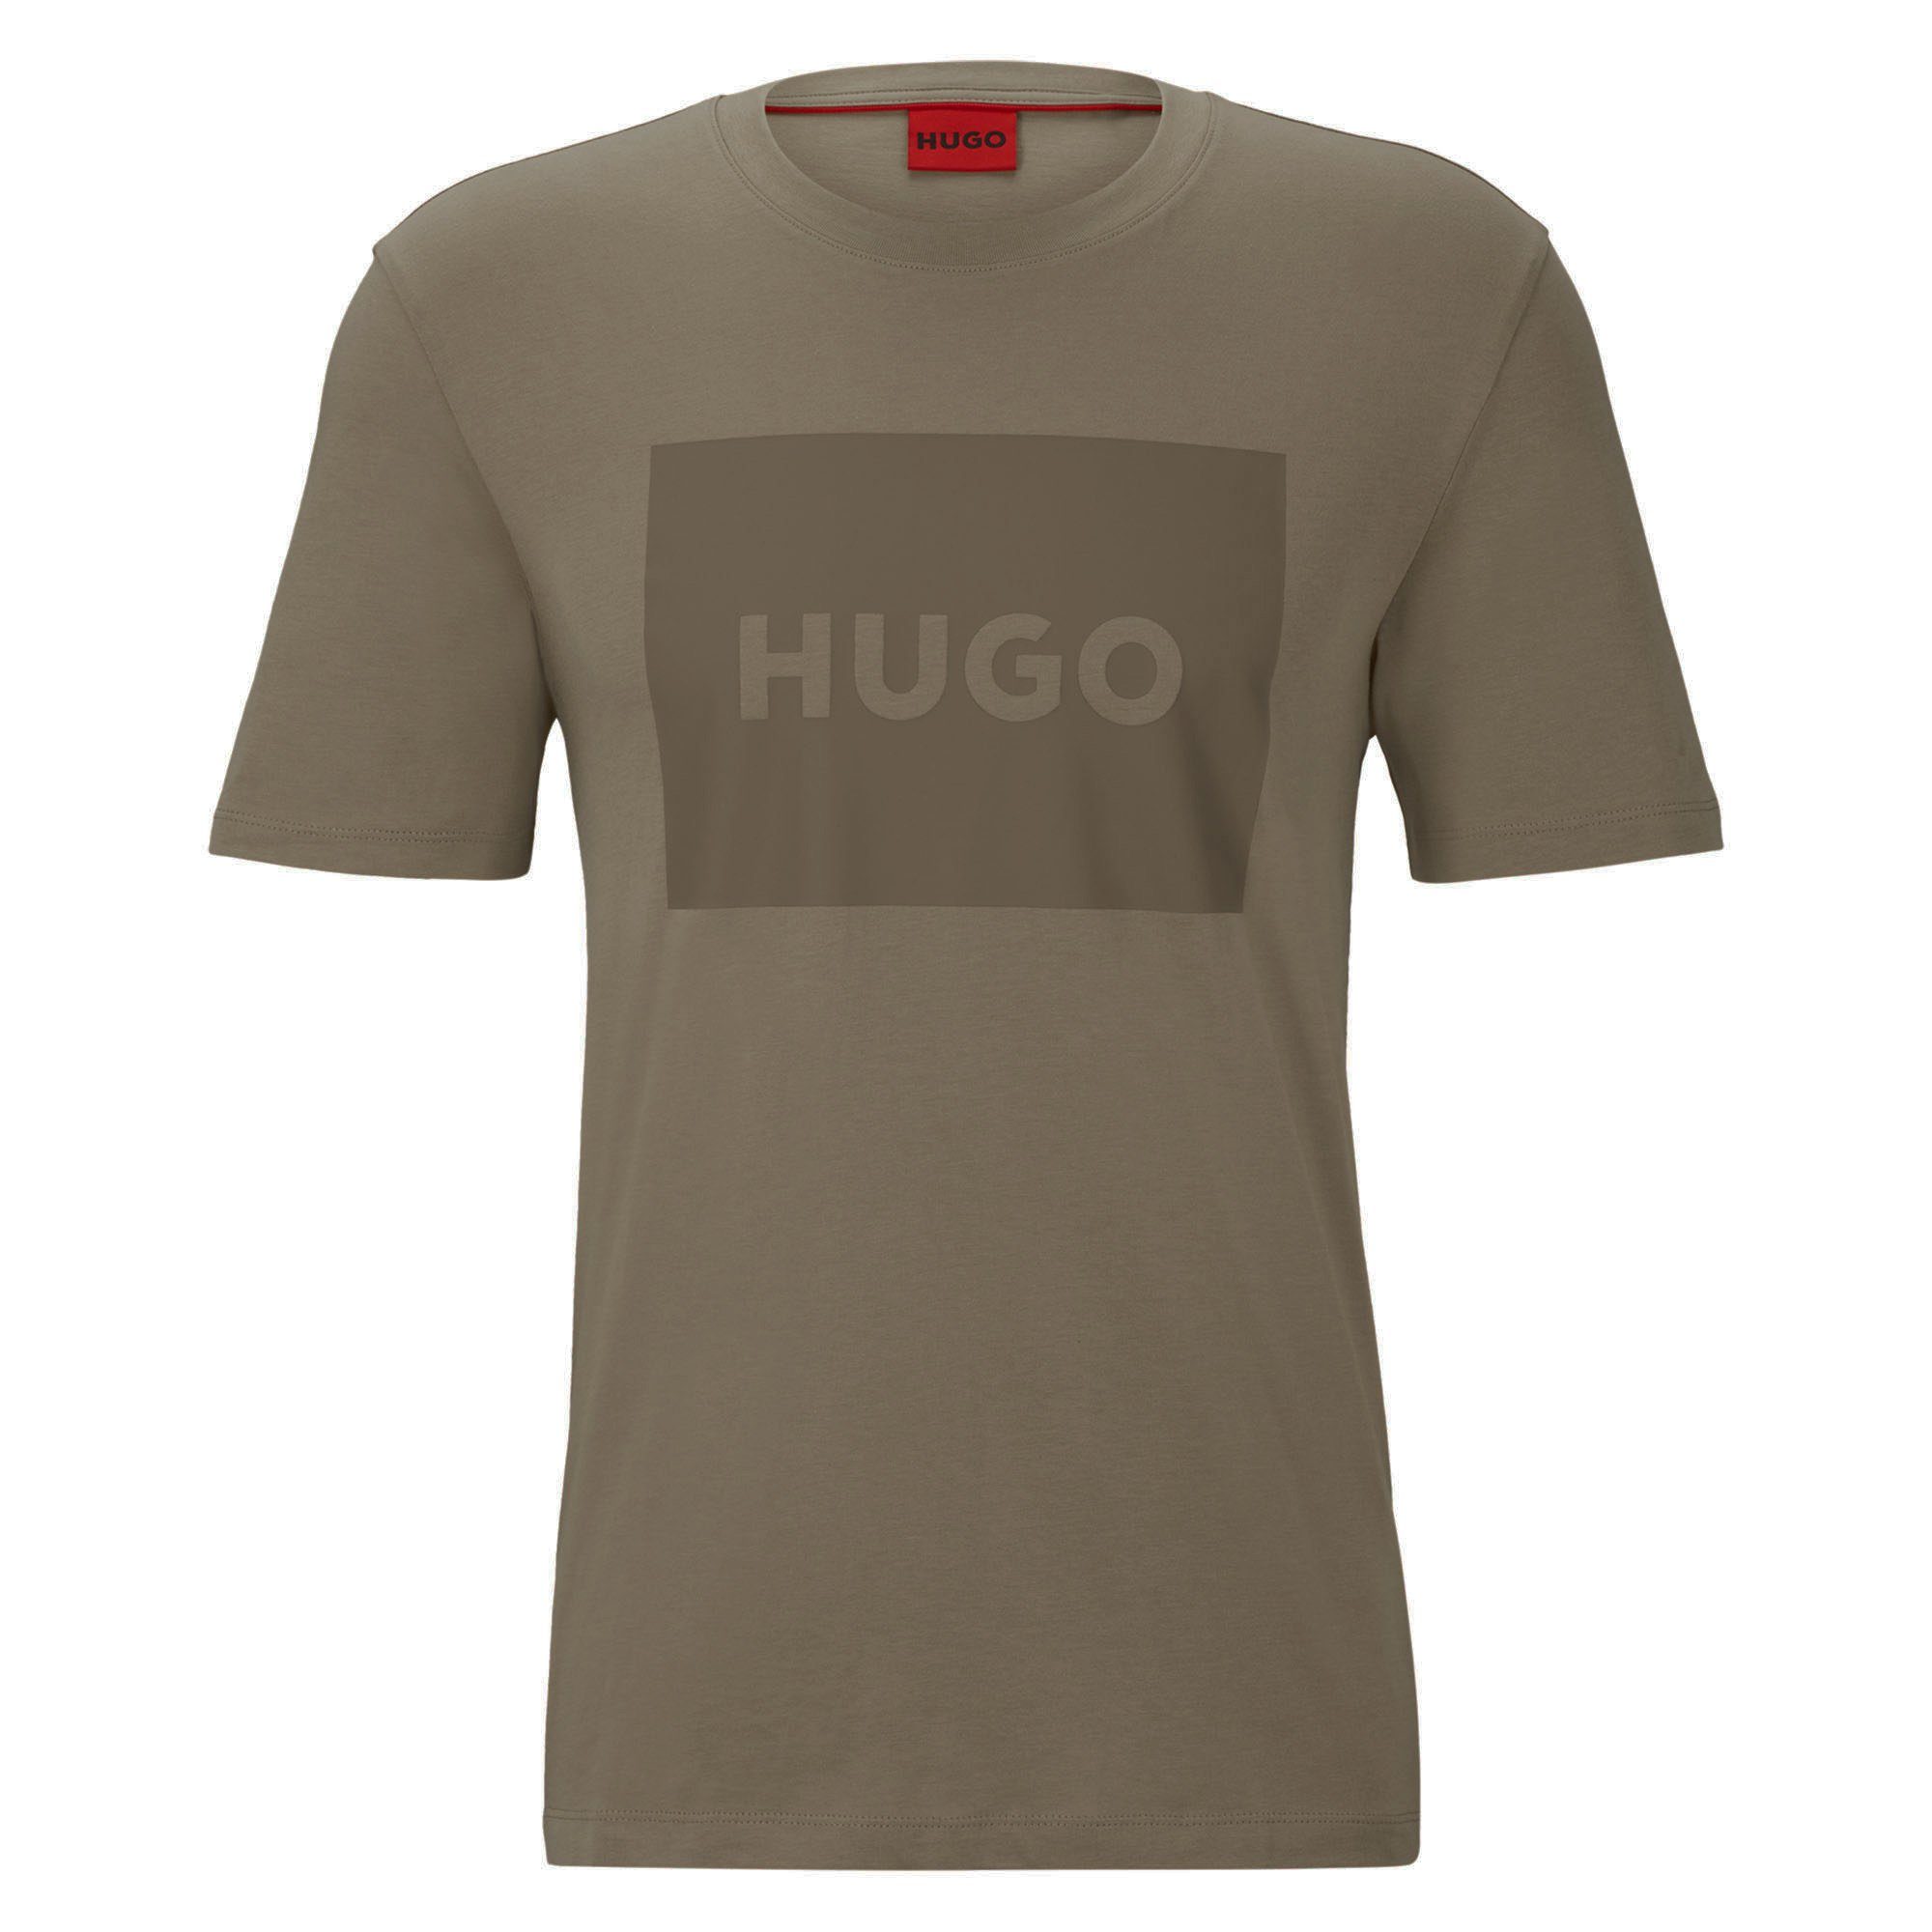 HUGO T-Shirt Herren T-Shirt - Dulive222, Rundhals, Kurzarm Braun